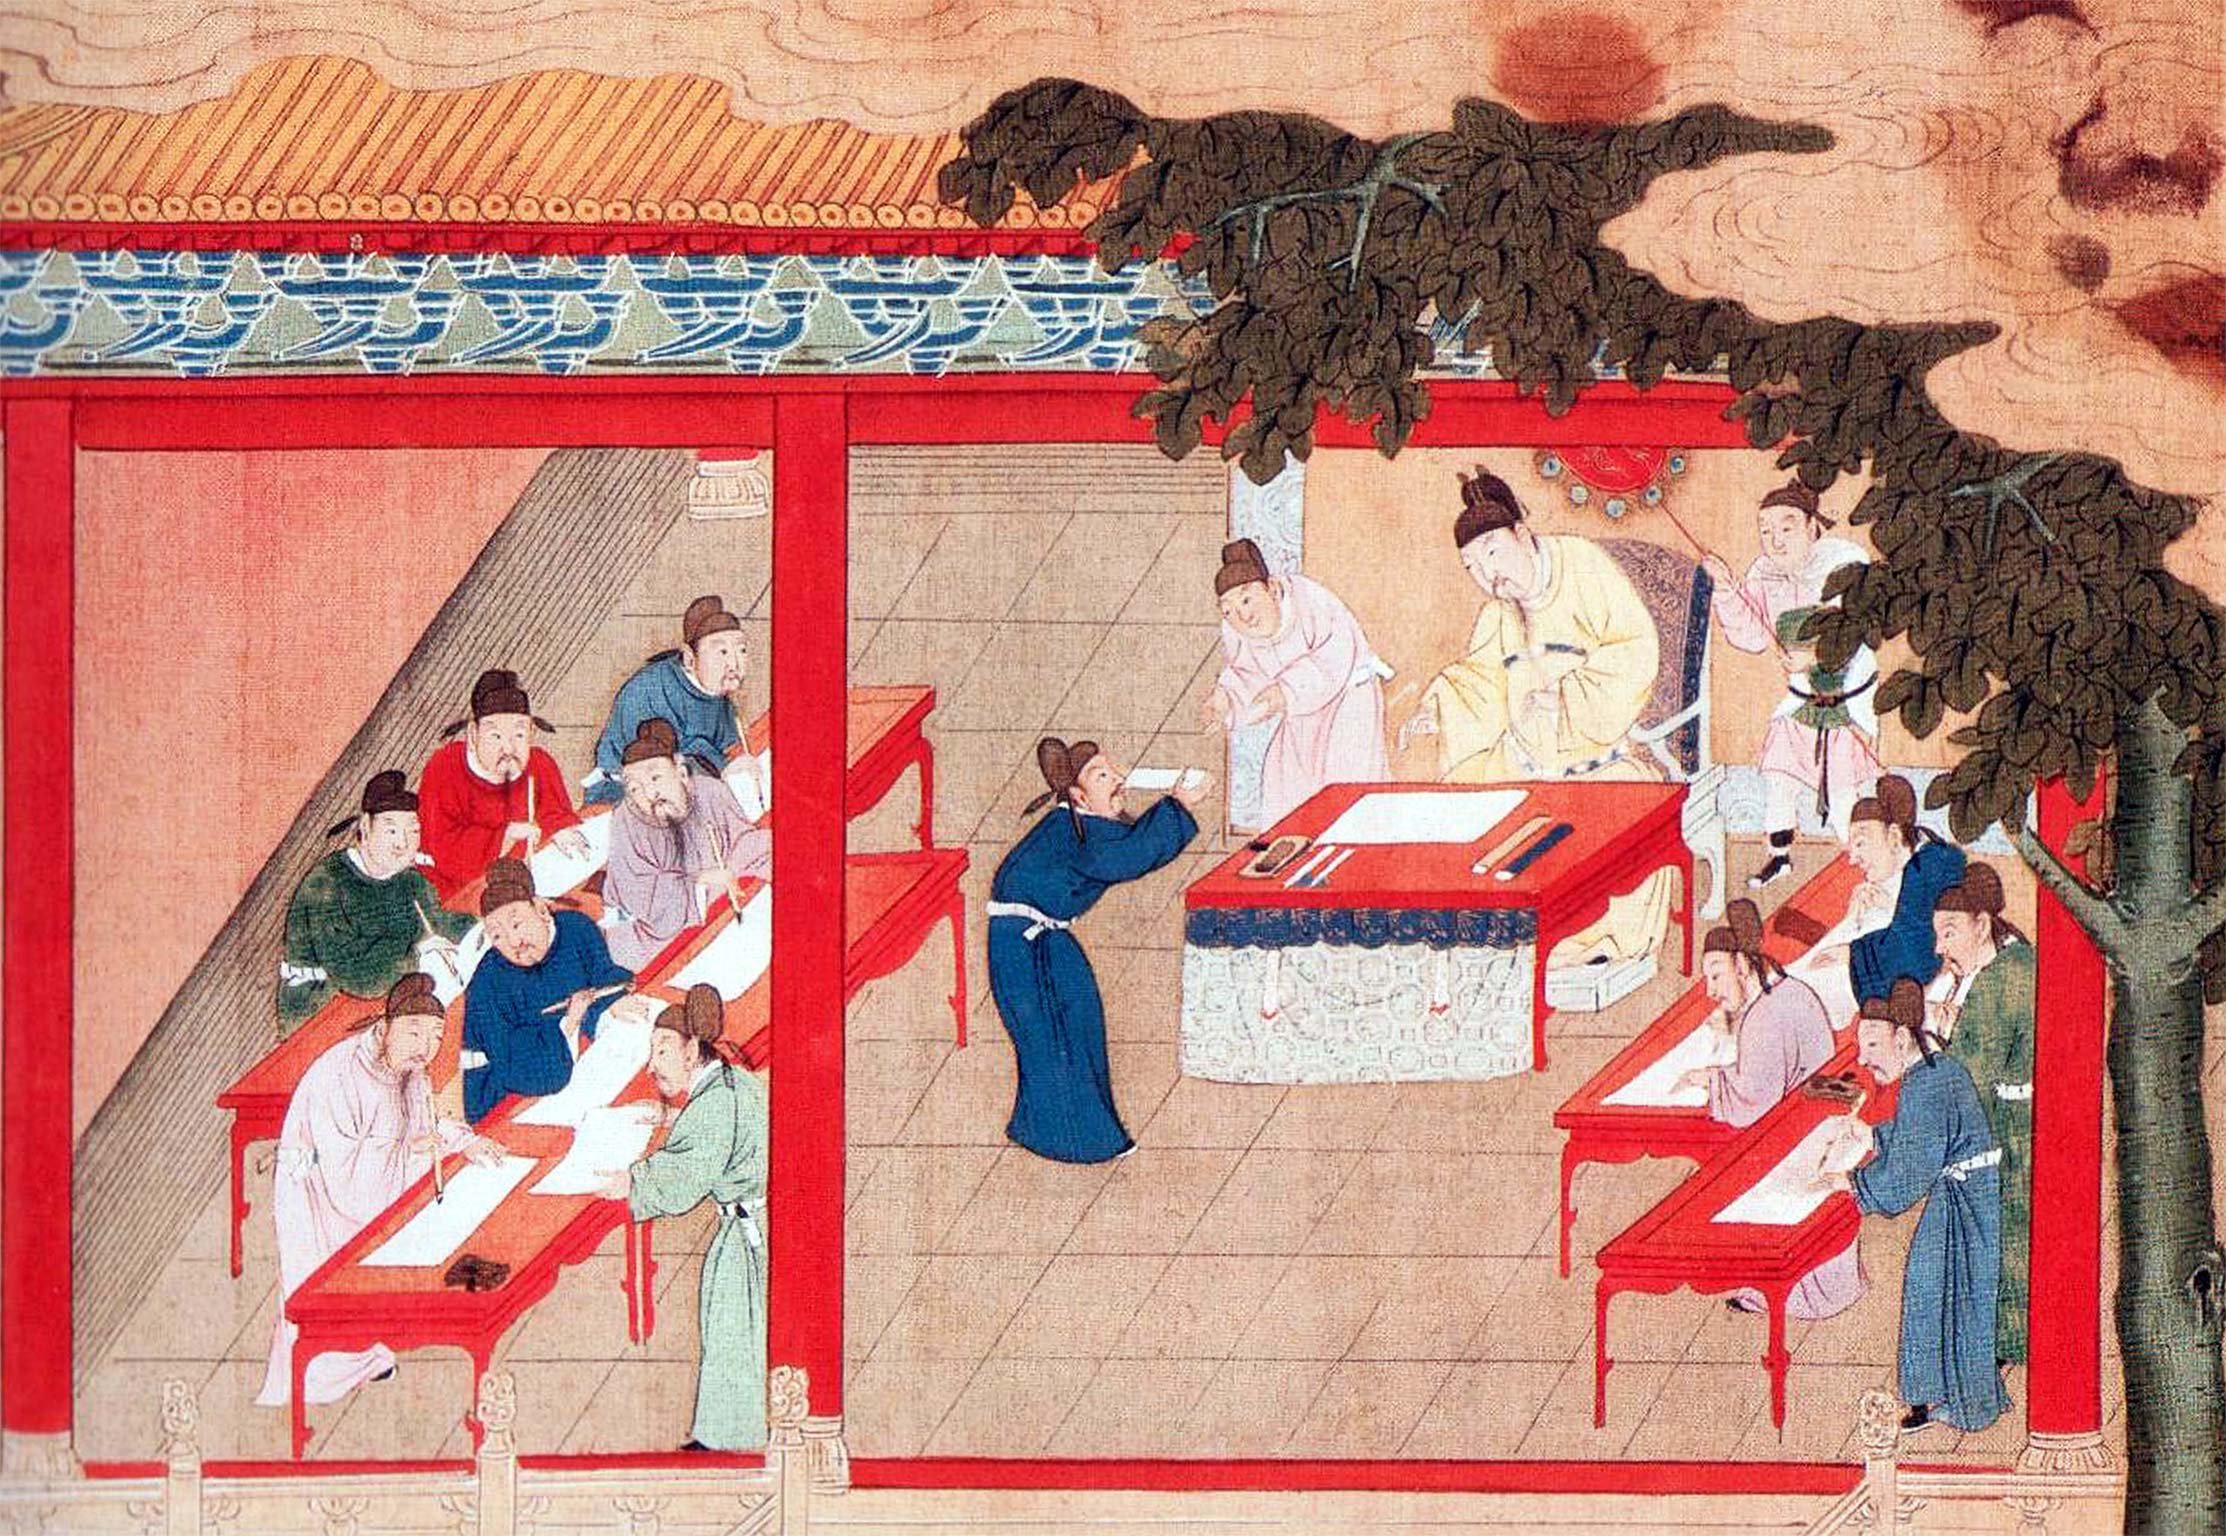 Проведение кэцзюй в период династии Суй